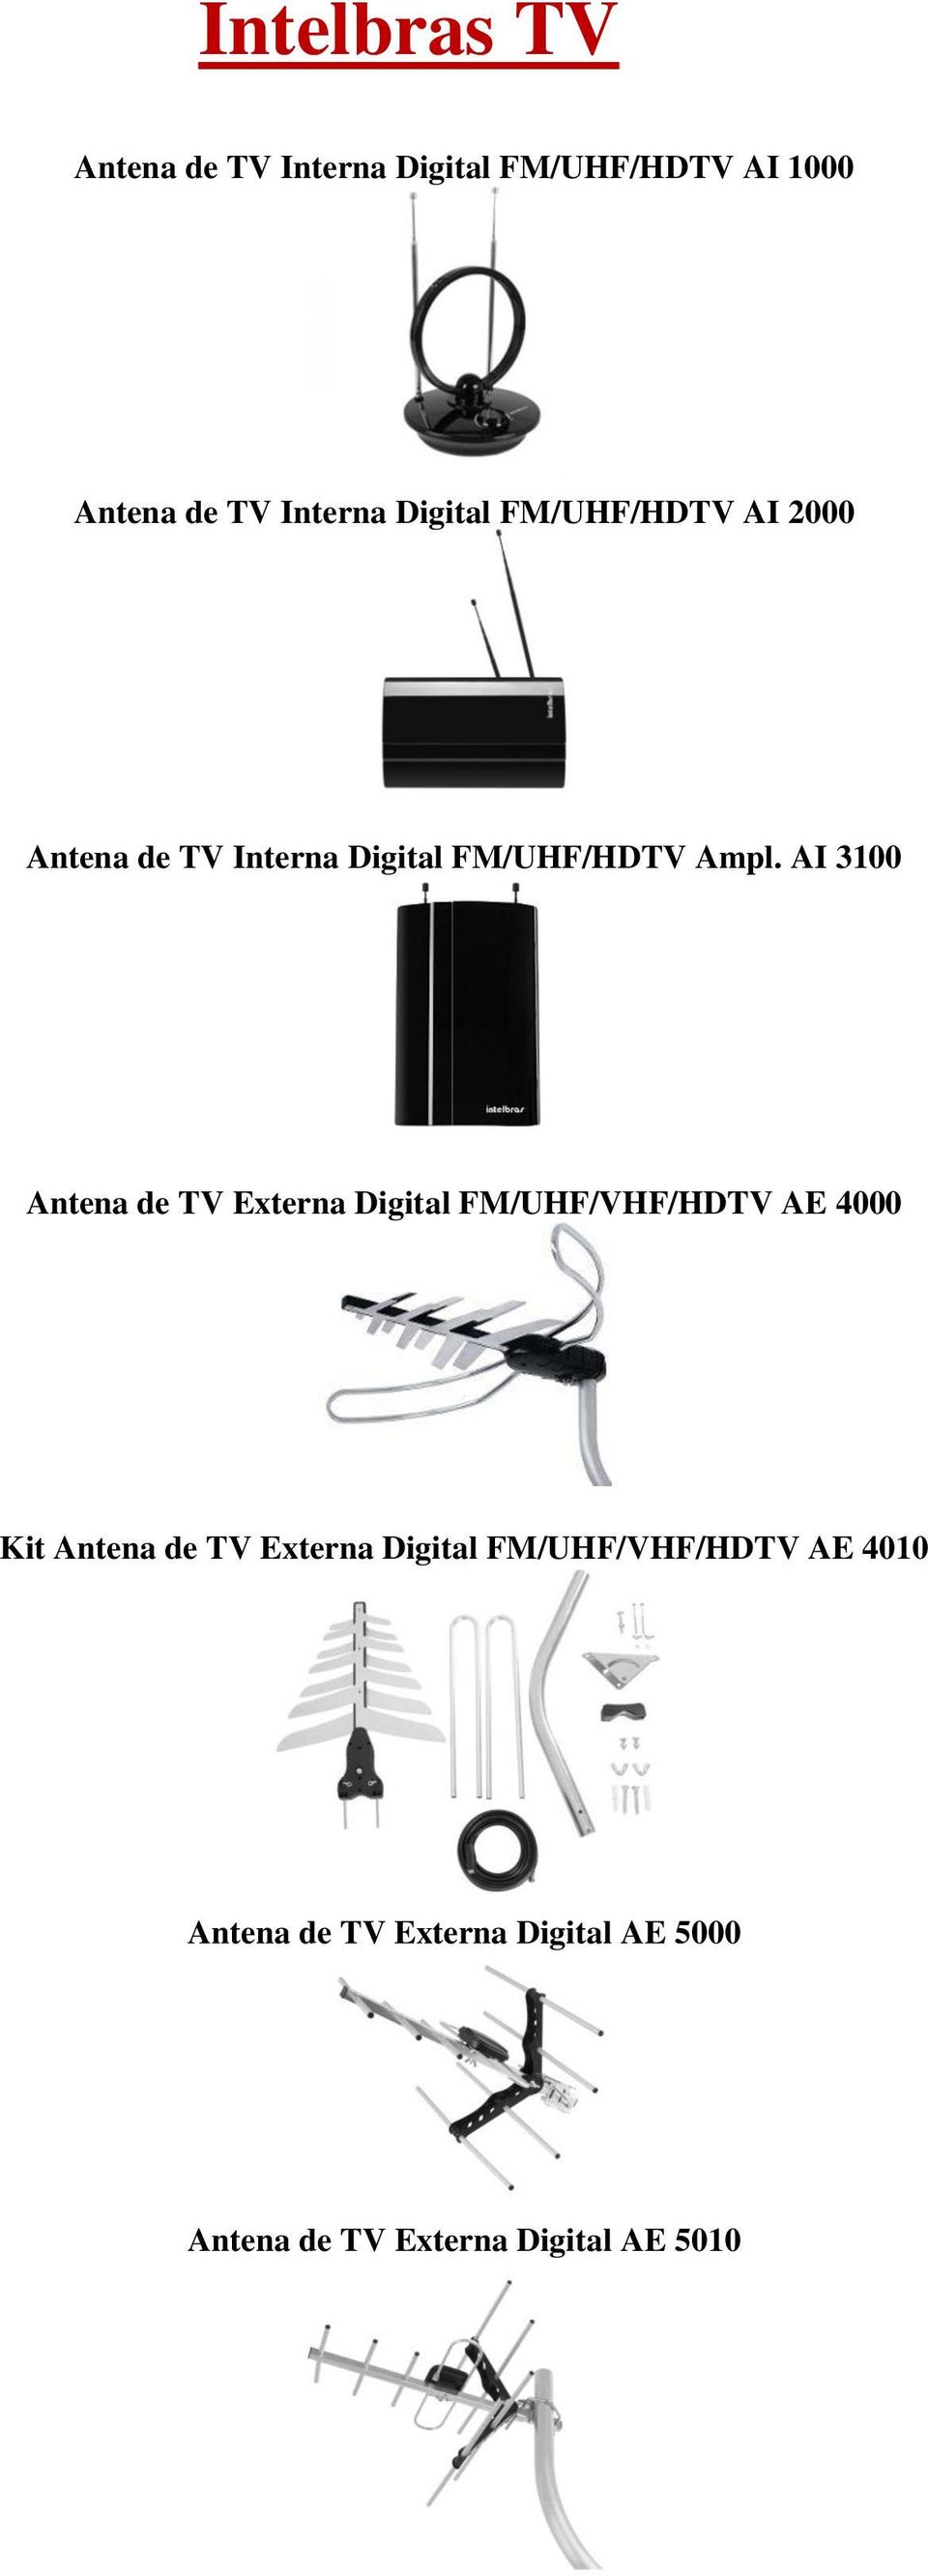 AI 3100 Antena de TV Externa Digital FM/UHF/VHF/HDTV AE 4000 Kit Antena de TV Externa